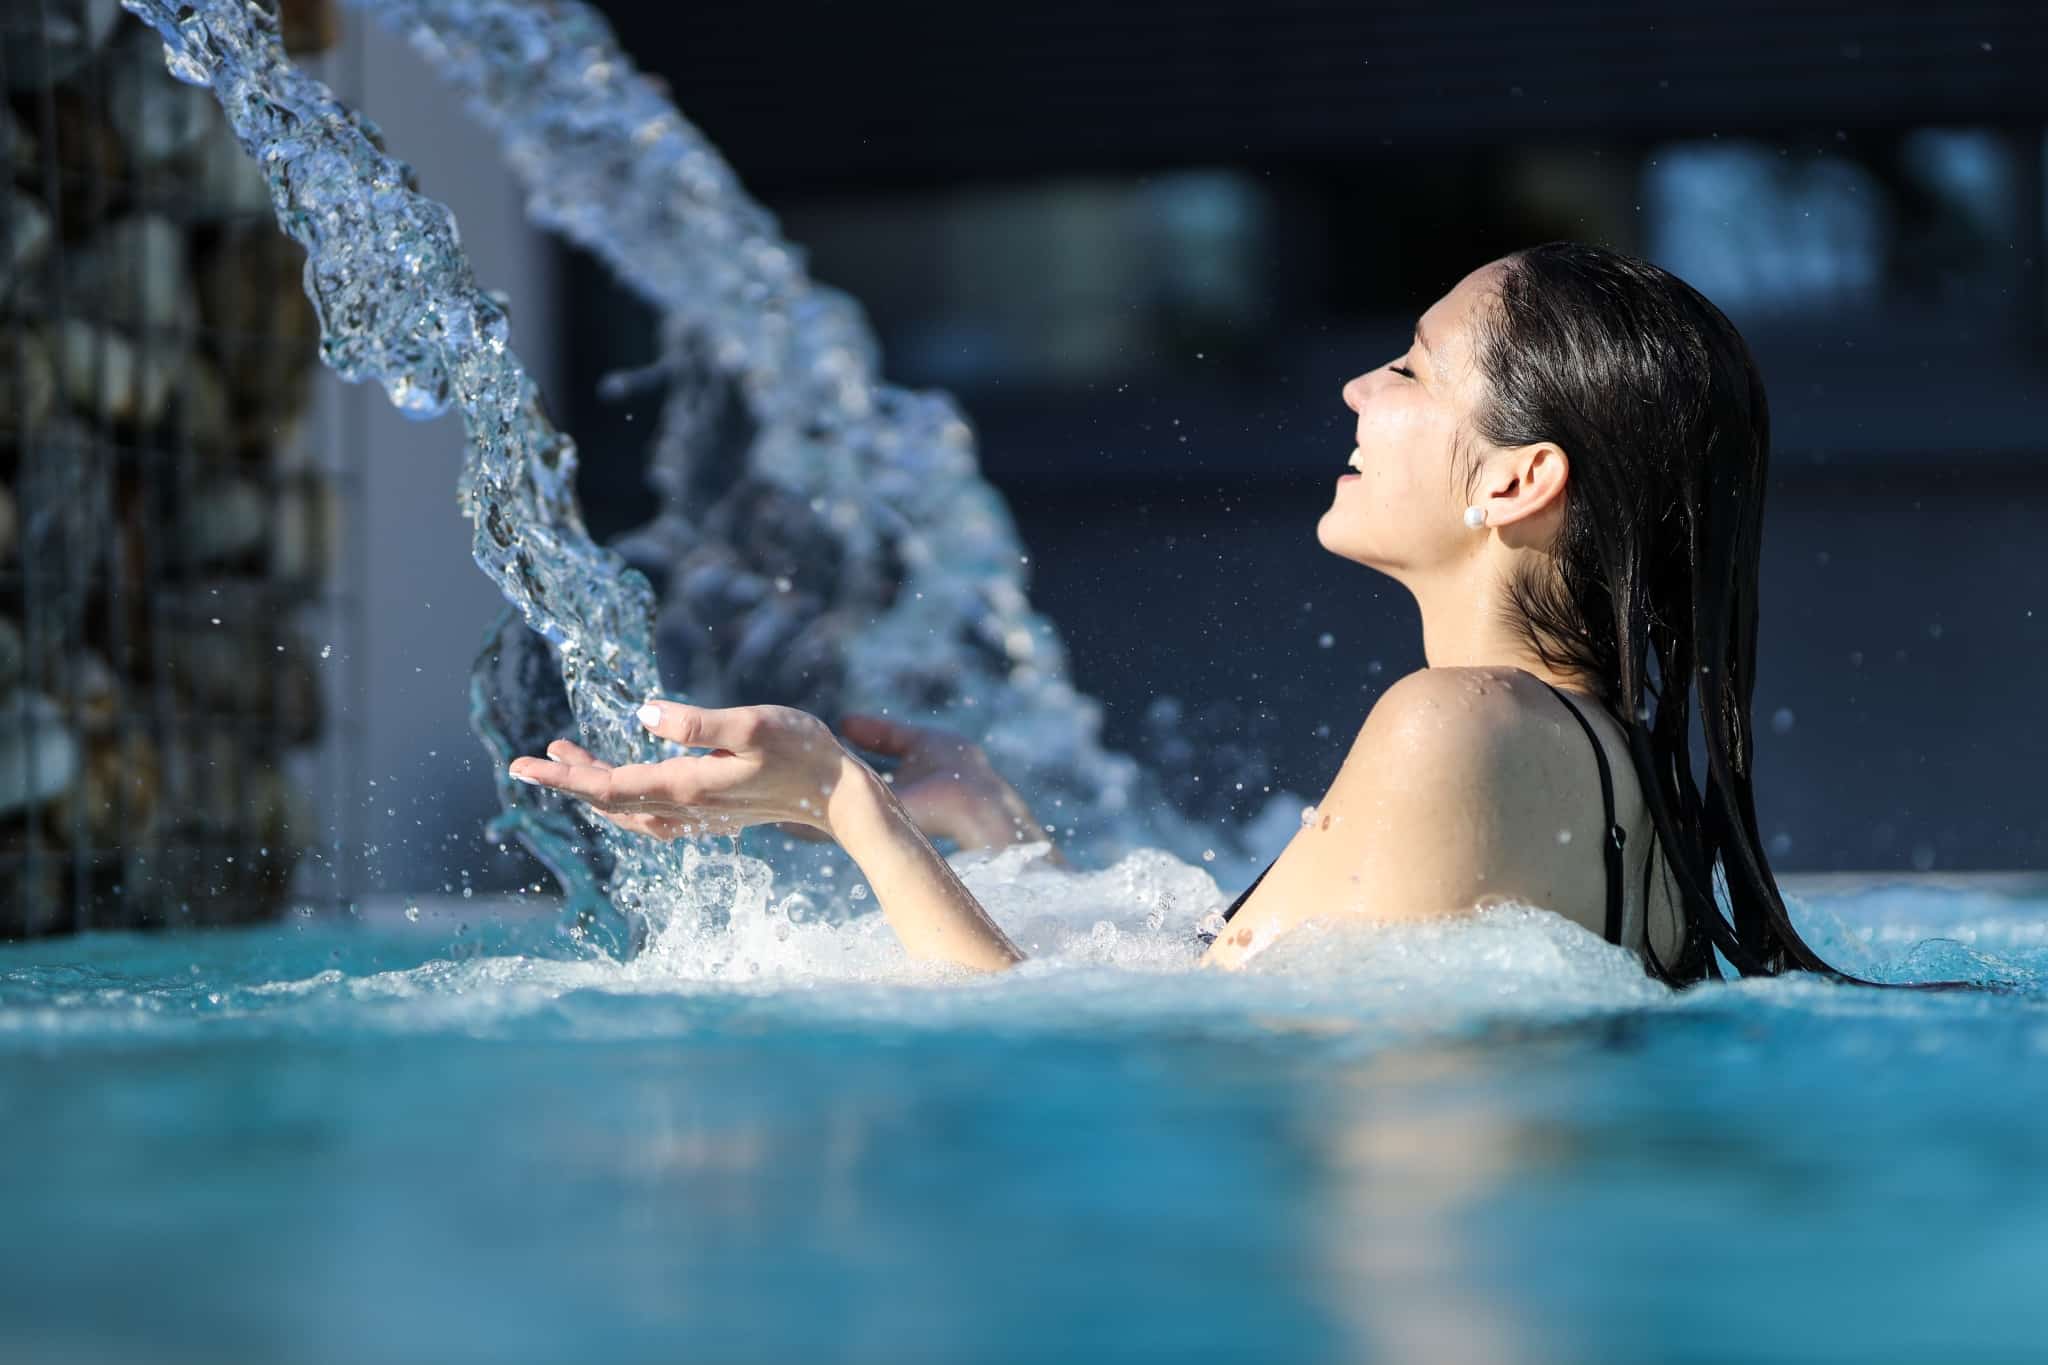 Eine junge Dame steht im 36 Grad heißen Quellbecken der Parktherme und wendet sich dem Wasserfall zu, dessen Wasser ihre beiden ausgestreckten Hände berührt.